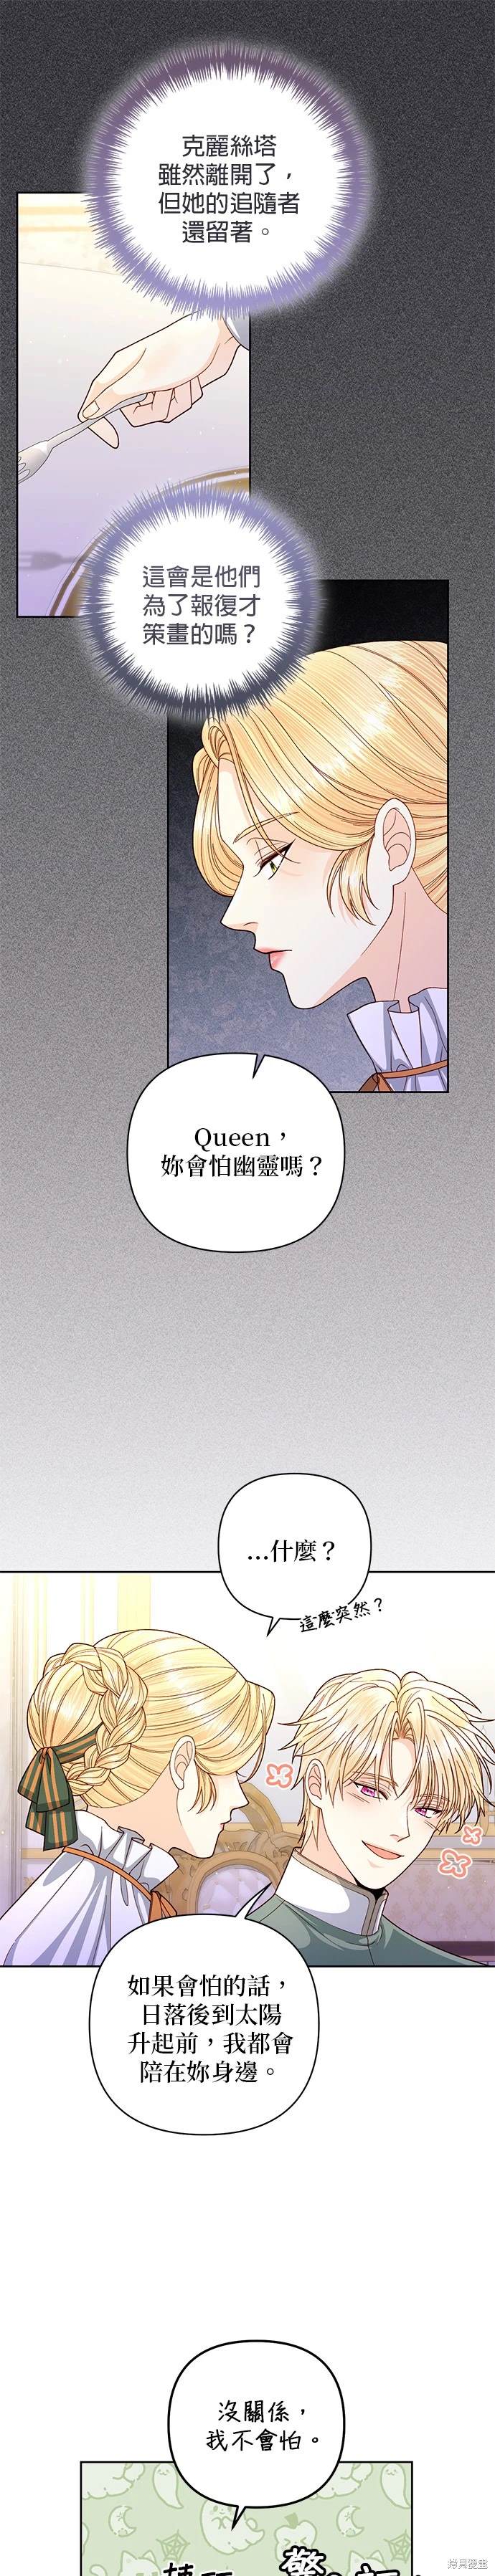 再婚皇后漫画,第146话10图